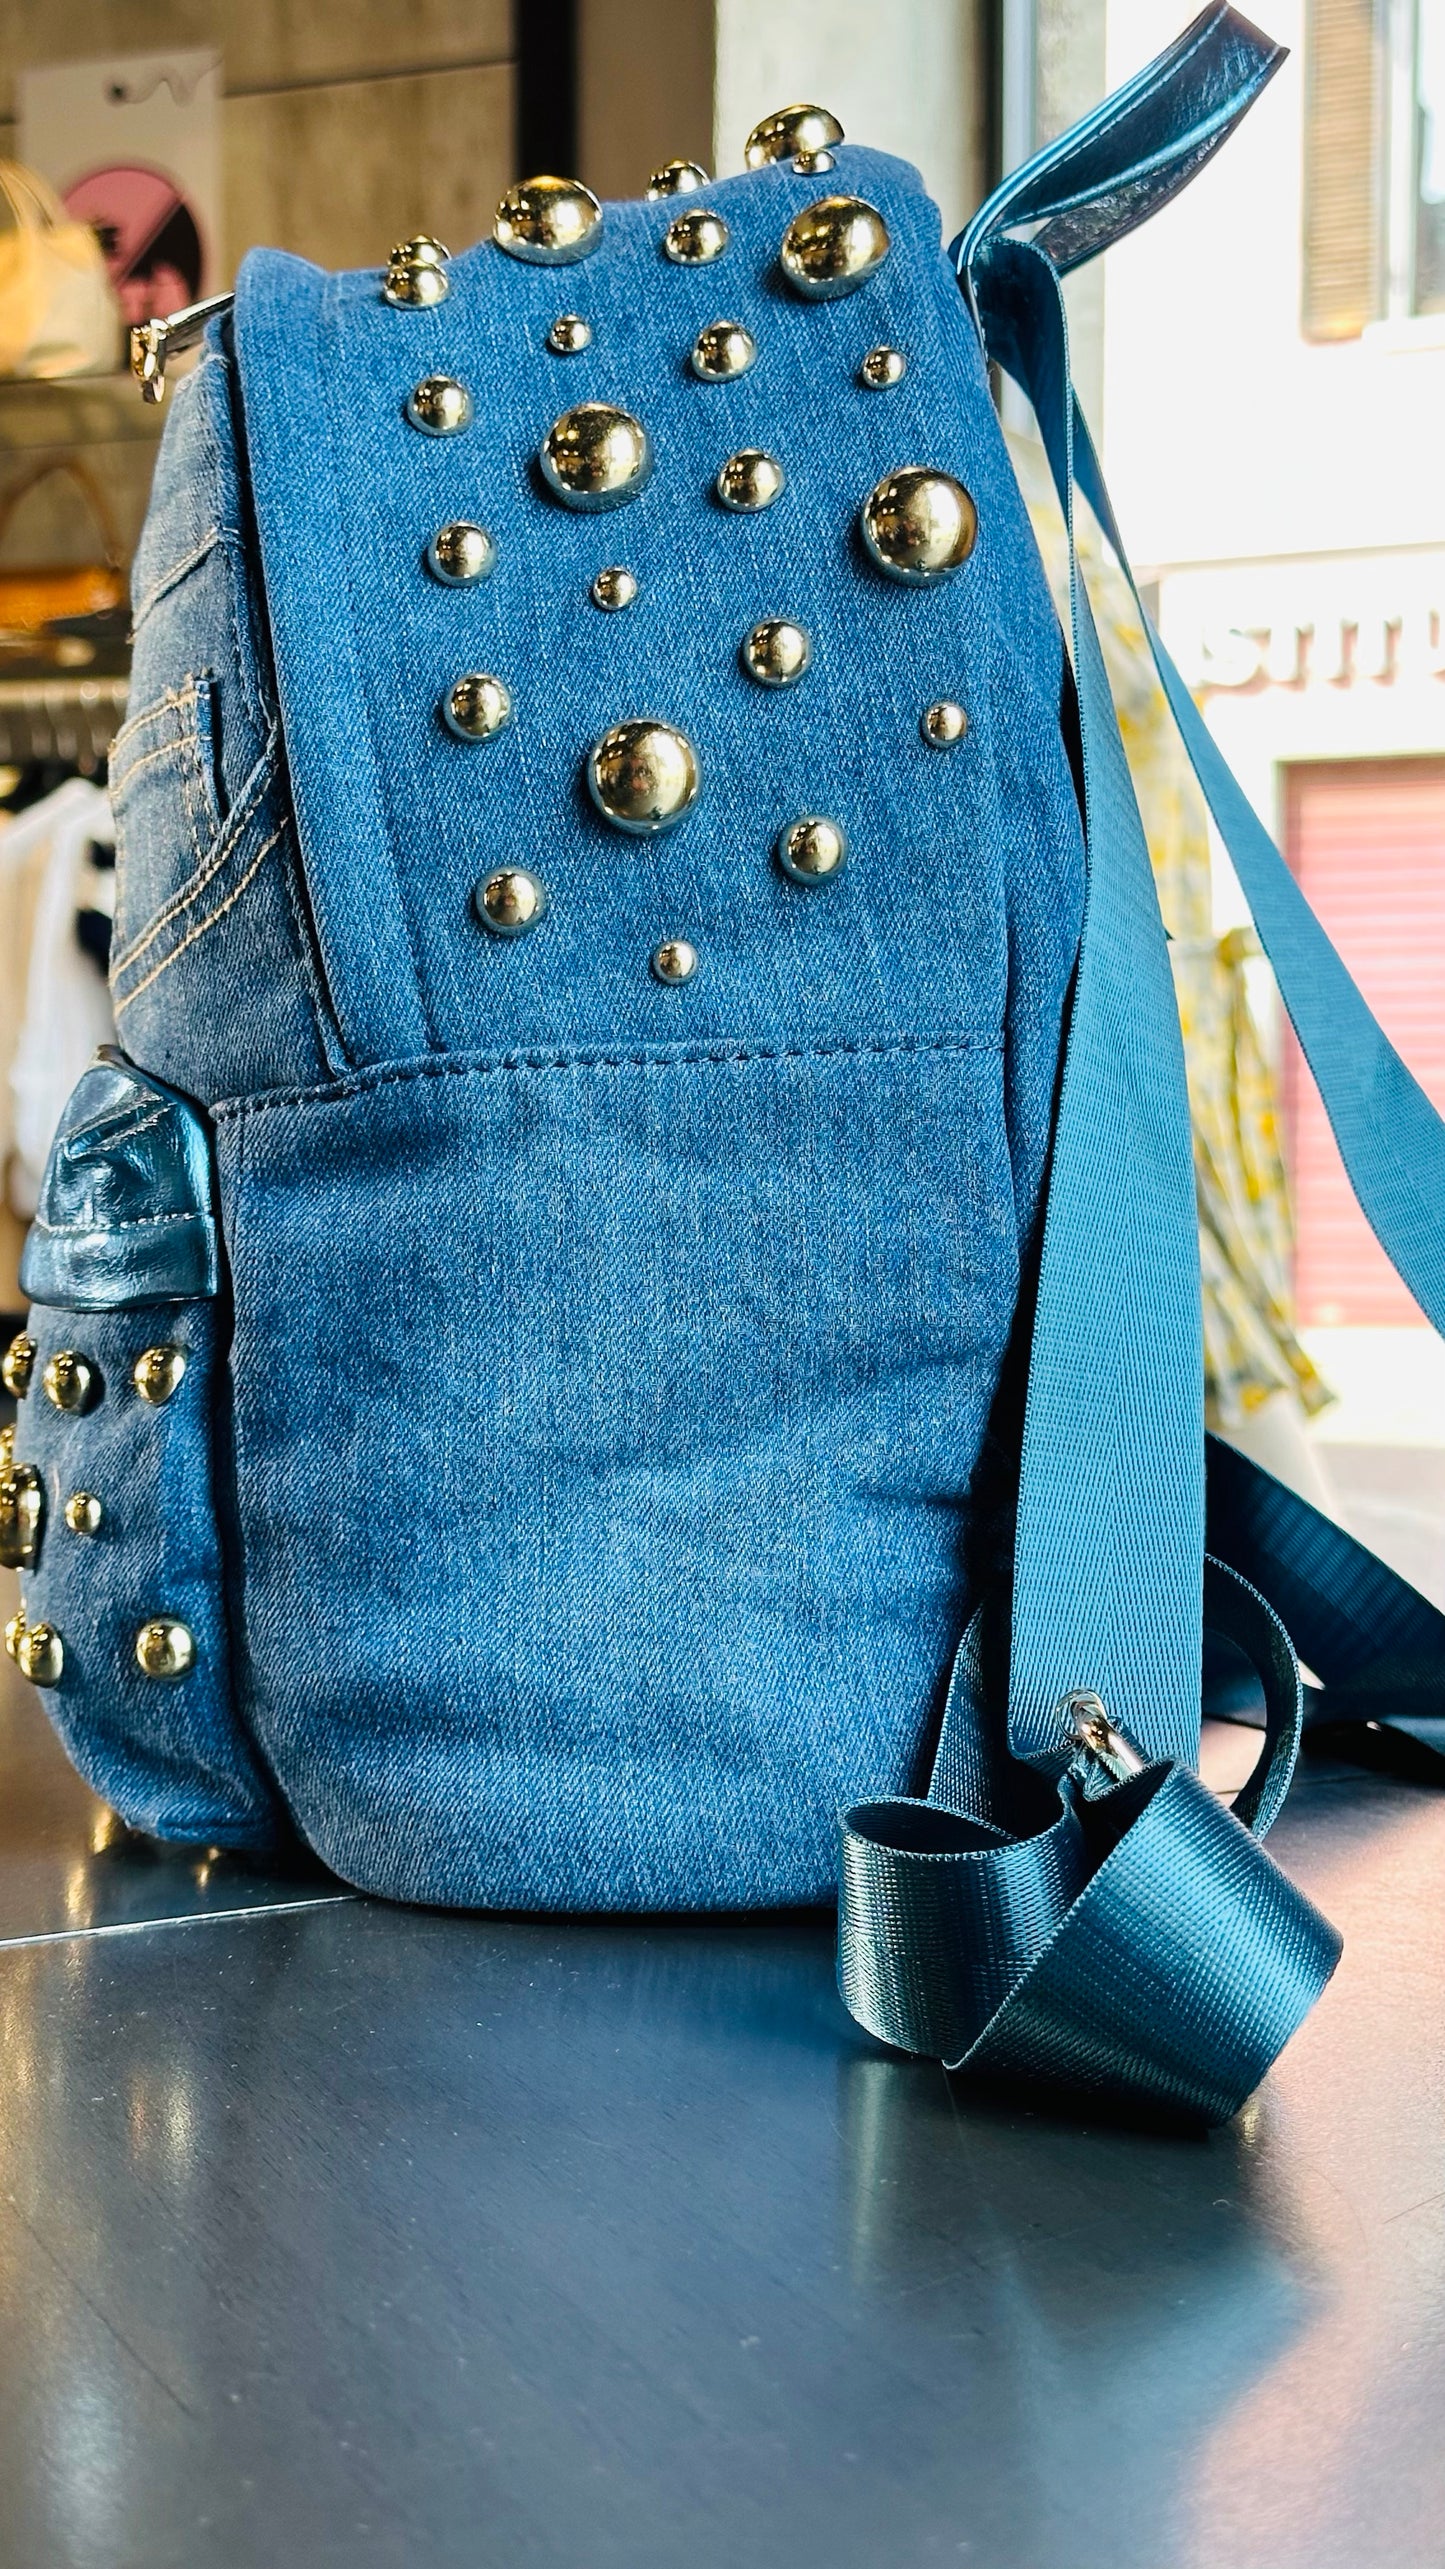 Zaino in jeans con borchie e inserti in similpelle azzurri 480